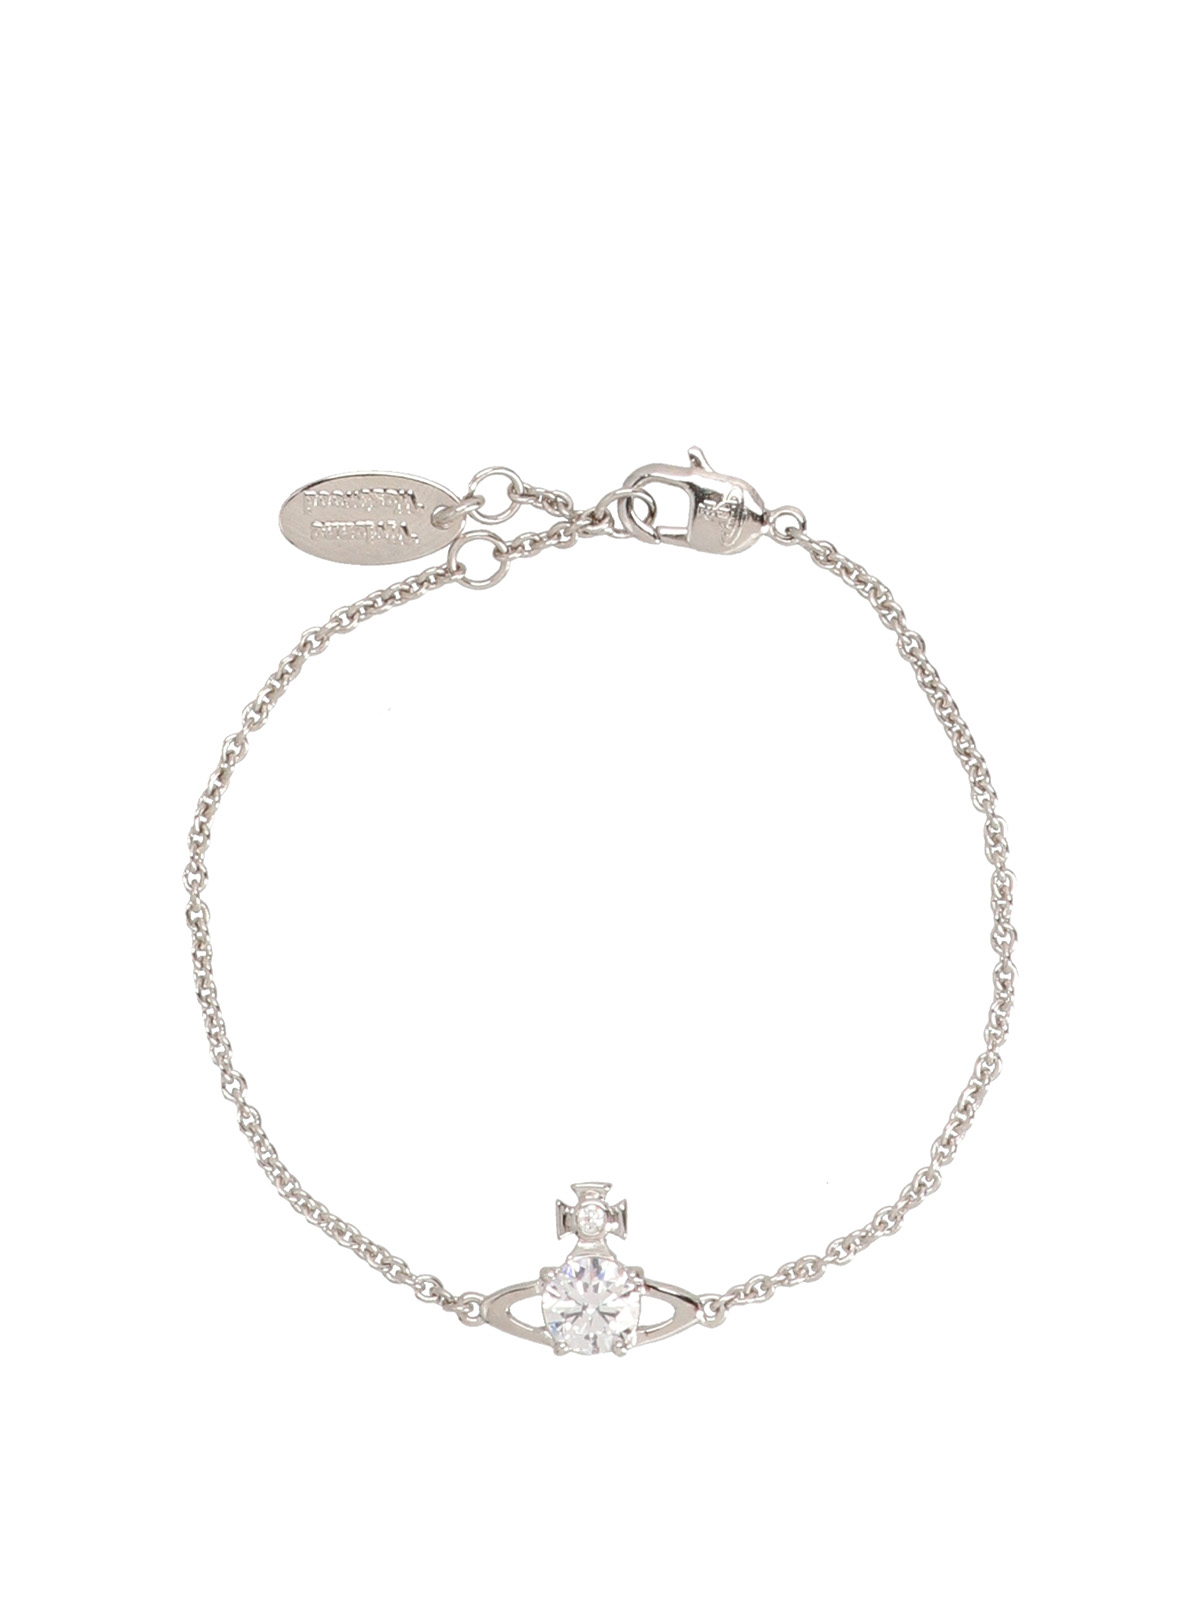 Bracelets & Bangles Vivienne Westwood - Reina bracelet ...